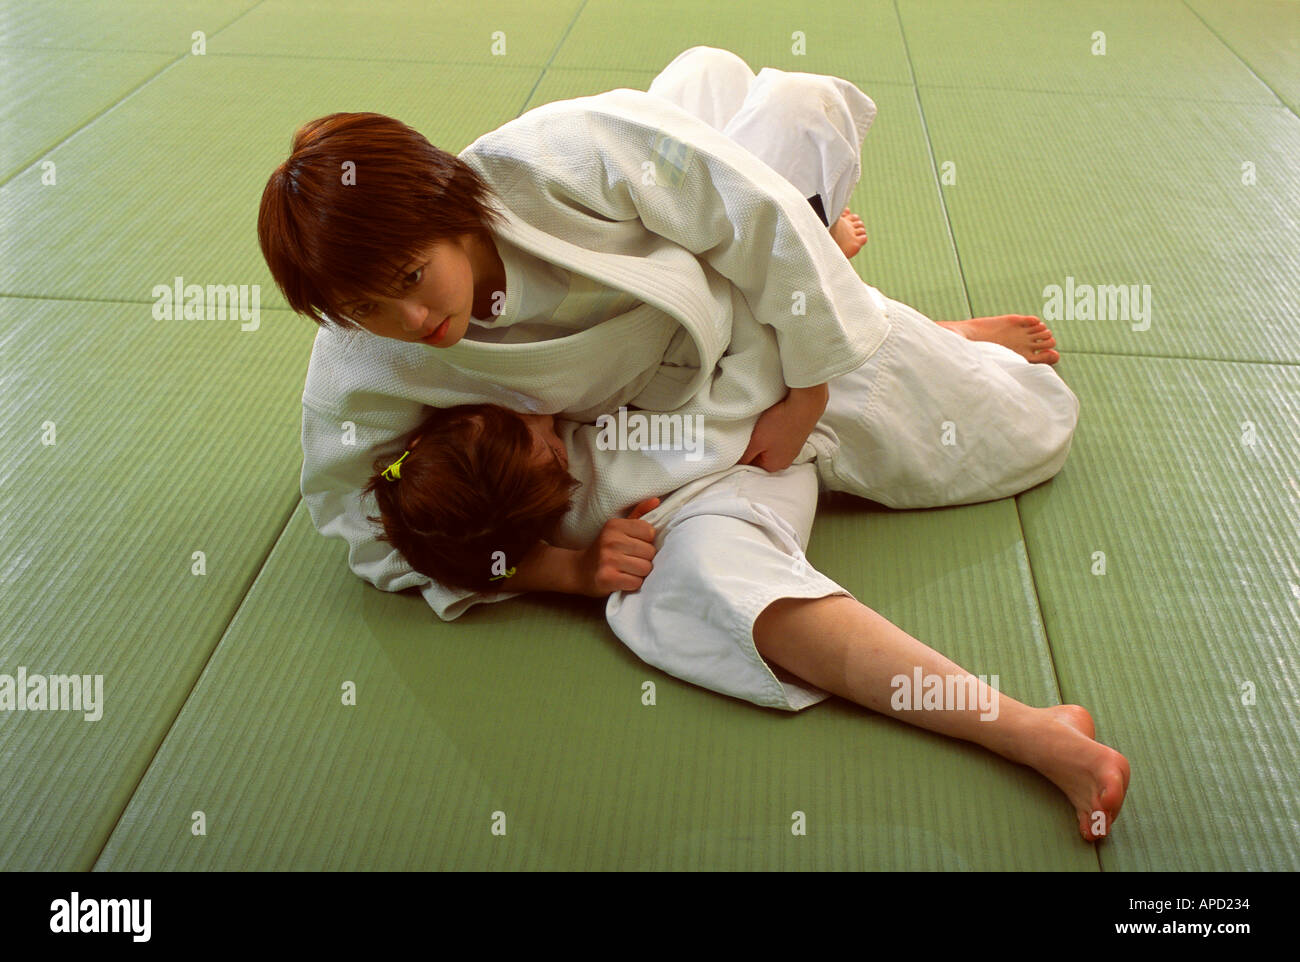 Sport Combat Martial Arts Judo Stock Photo